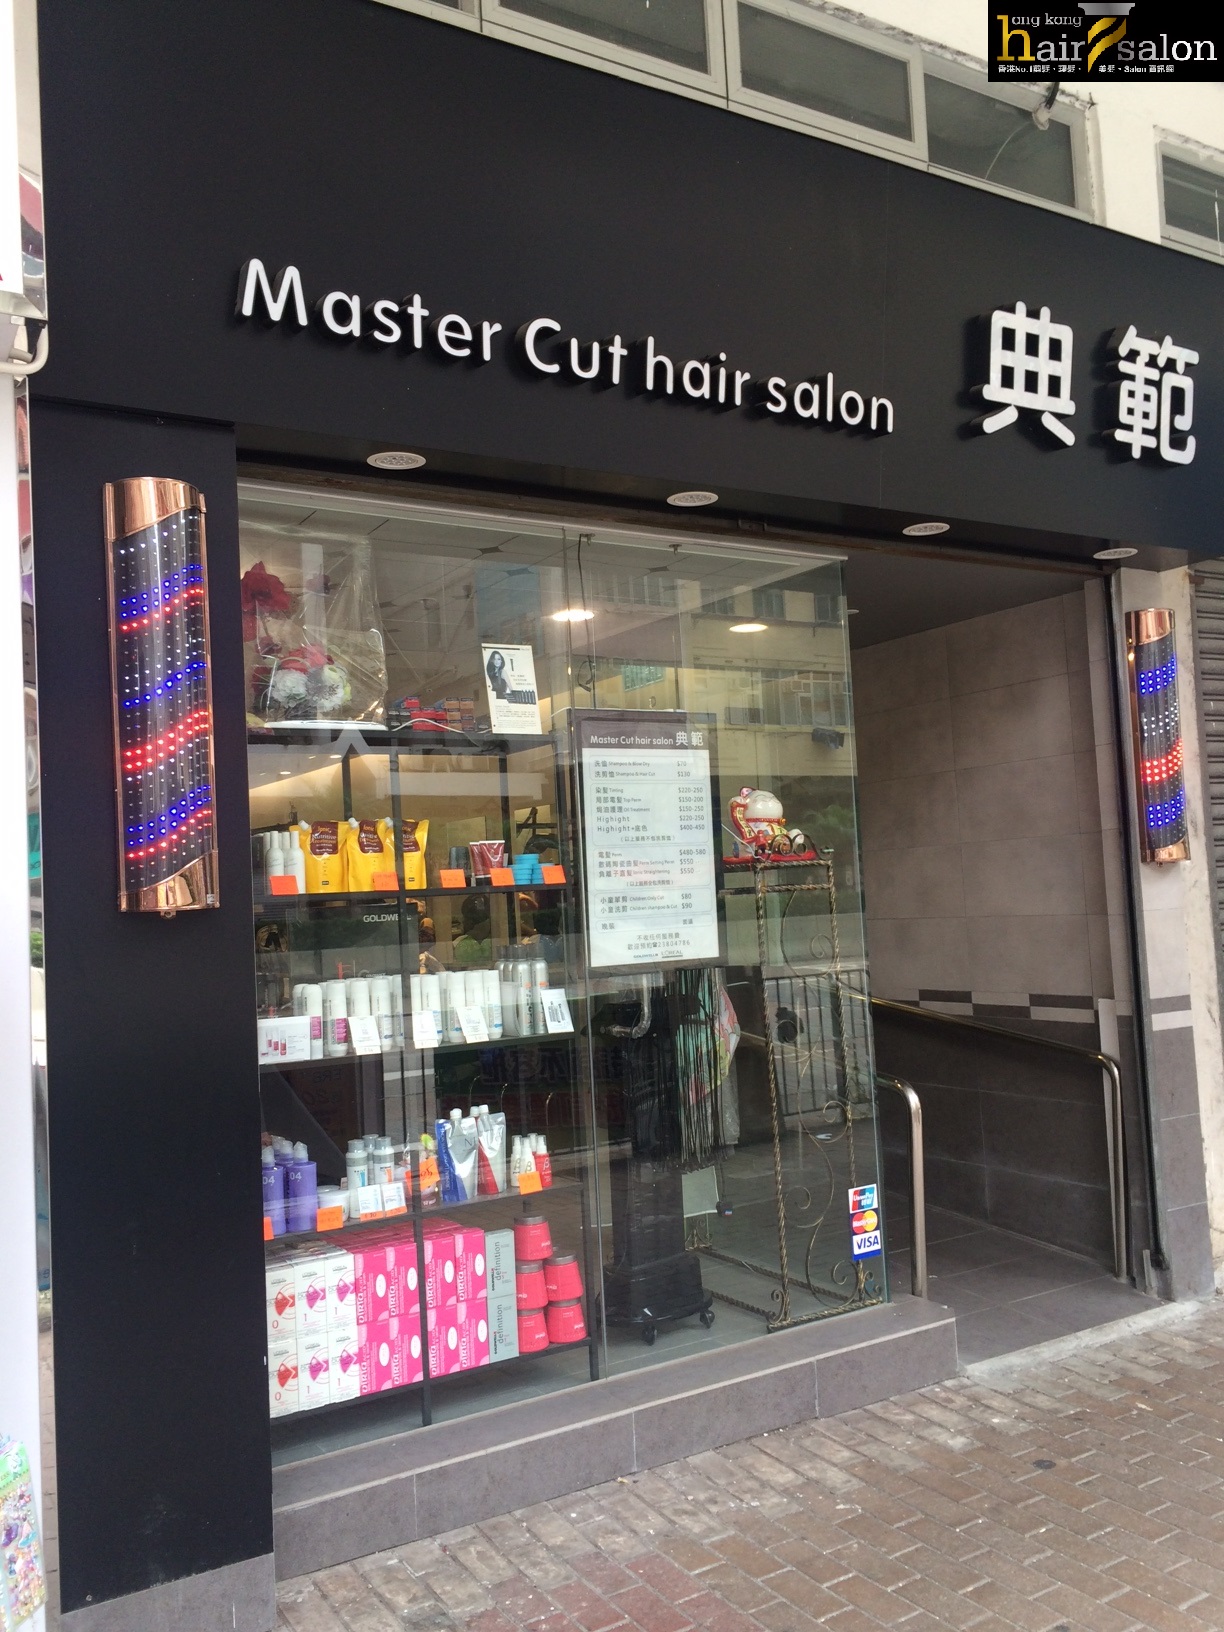 染髮: 典範 Master Cut Hair Salon